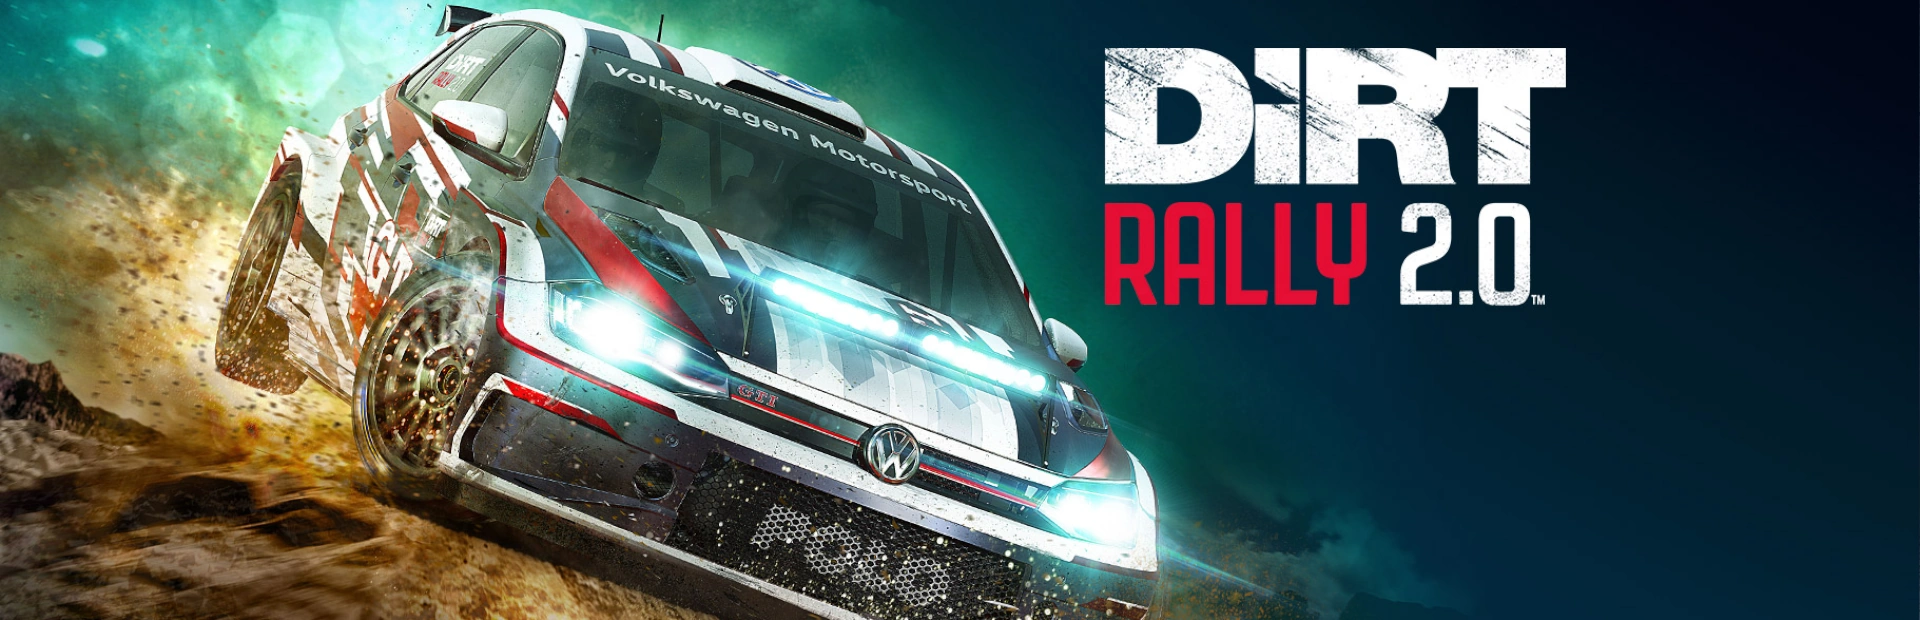 دانلود بازی DiRT Rally 2.0 برای کامپیوتر | گیمباتو